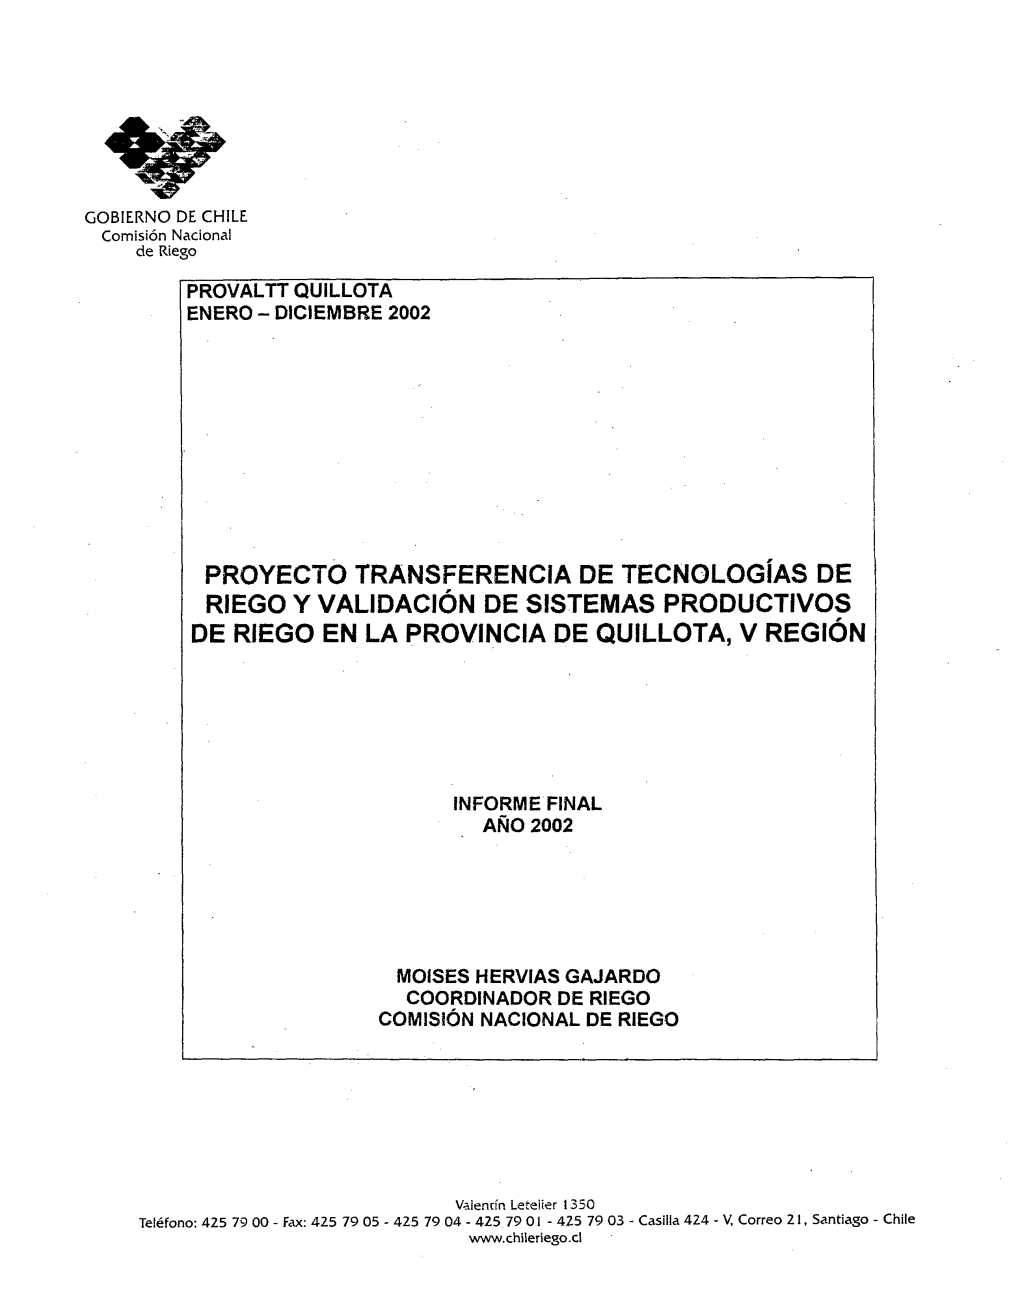 PROYECTO TRANSFERENCIA DE Tecnologías DE RIEGO Y Validación DE SISTEMAS PRODUCTIVOS DE RIEGO EN LA PROVINCIA DE QUILLOTA, V Región